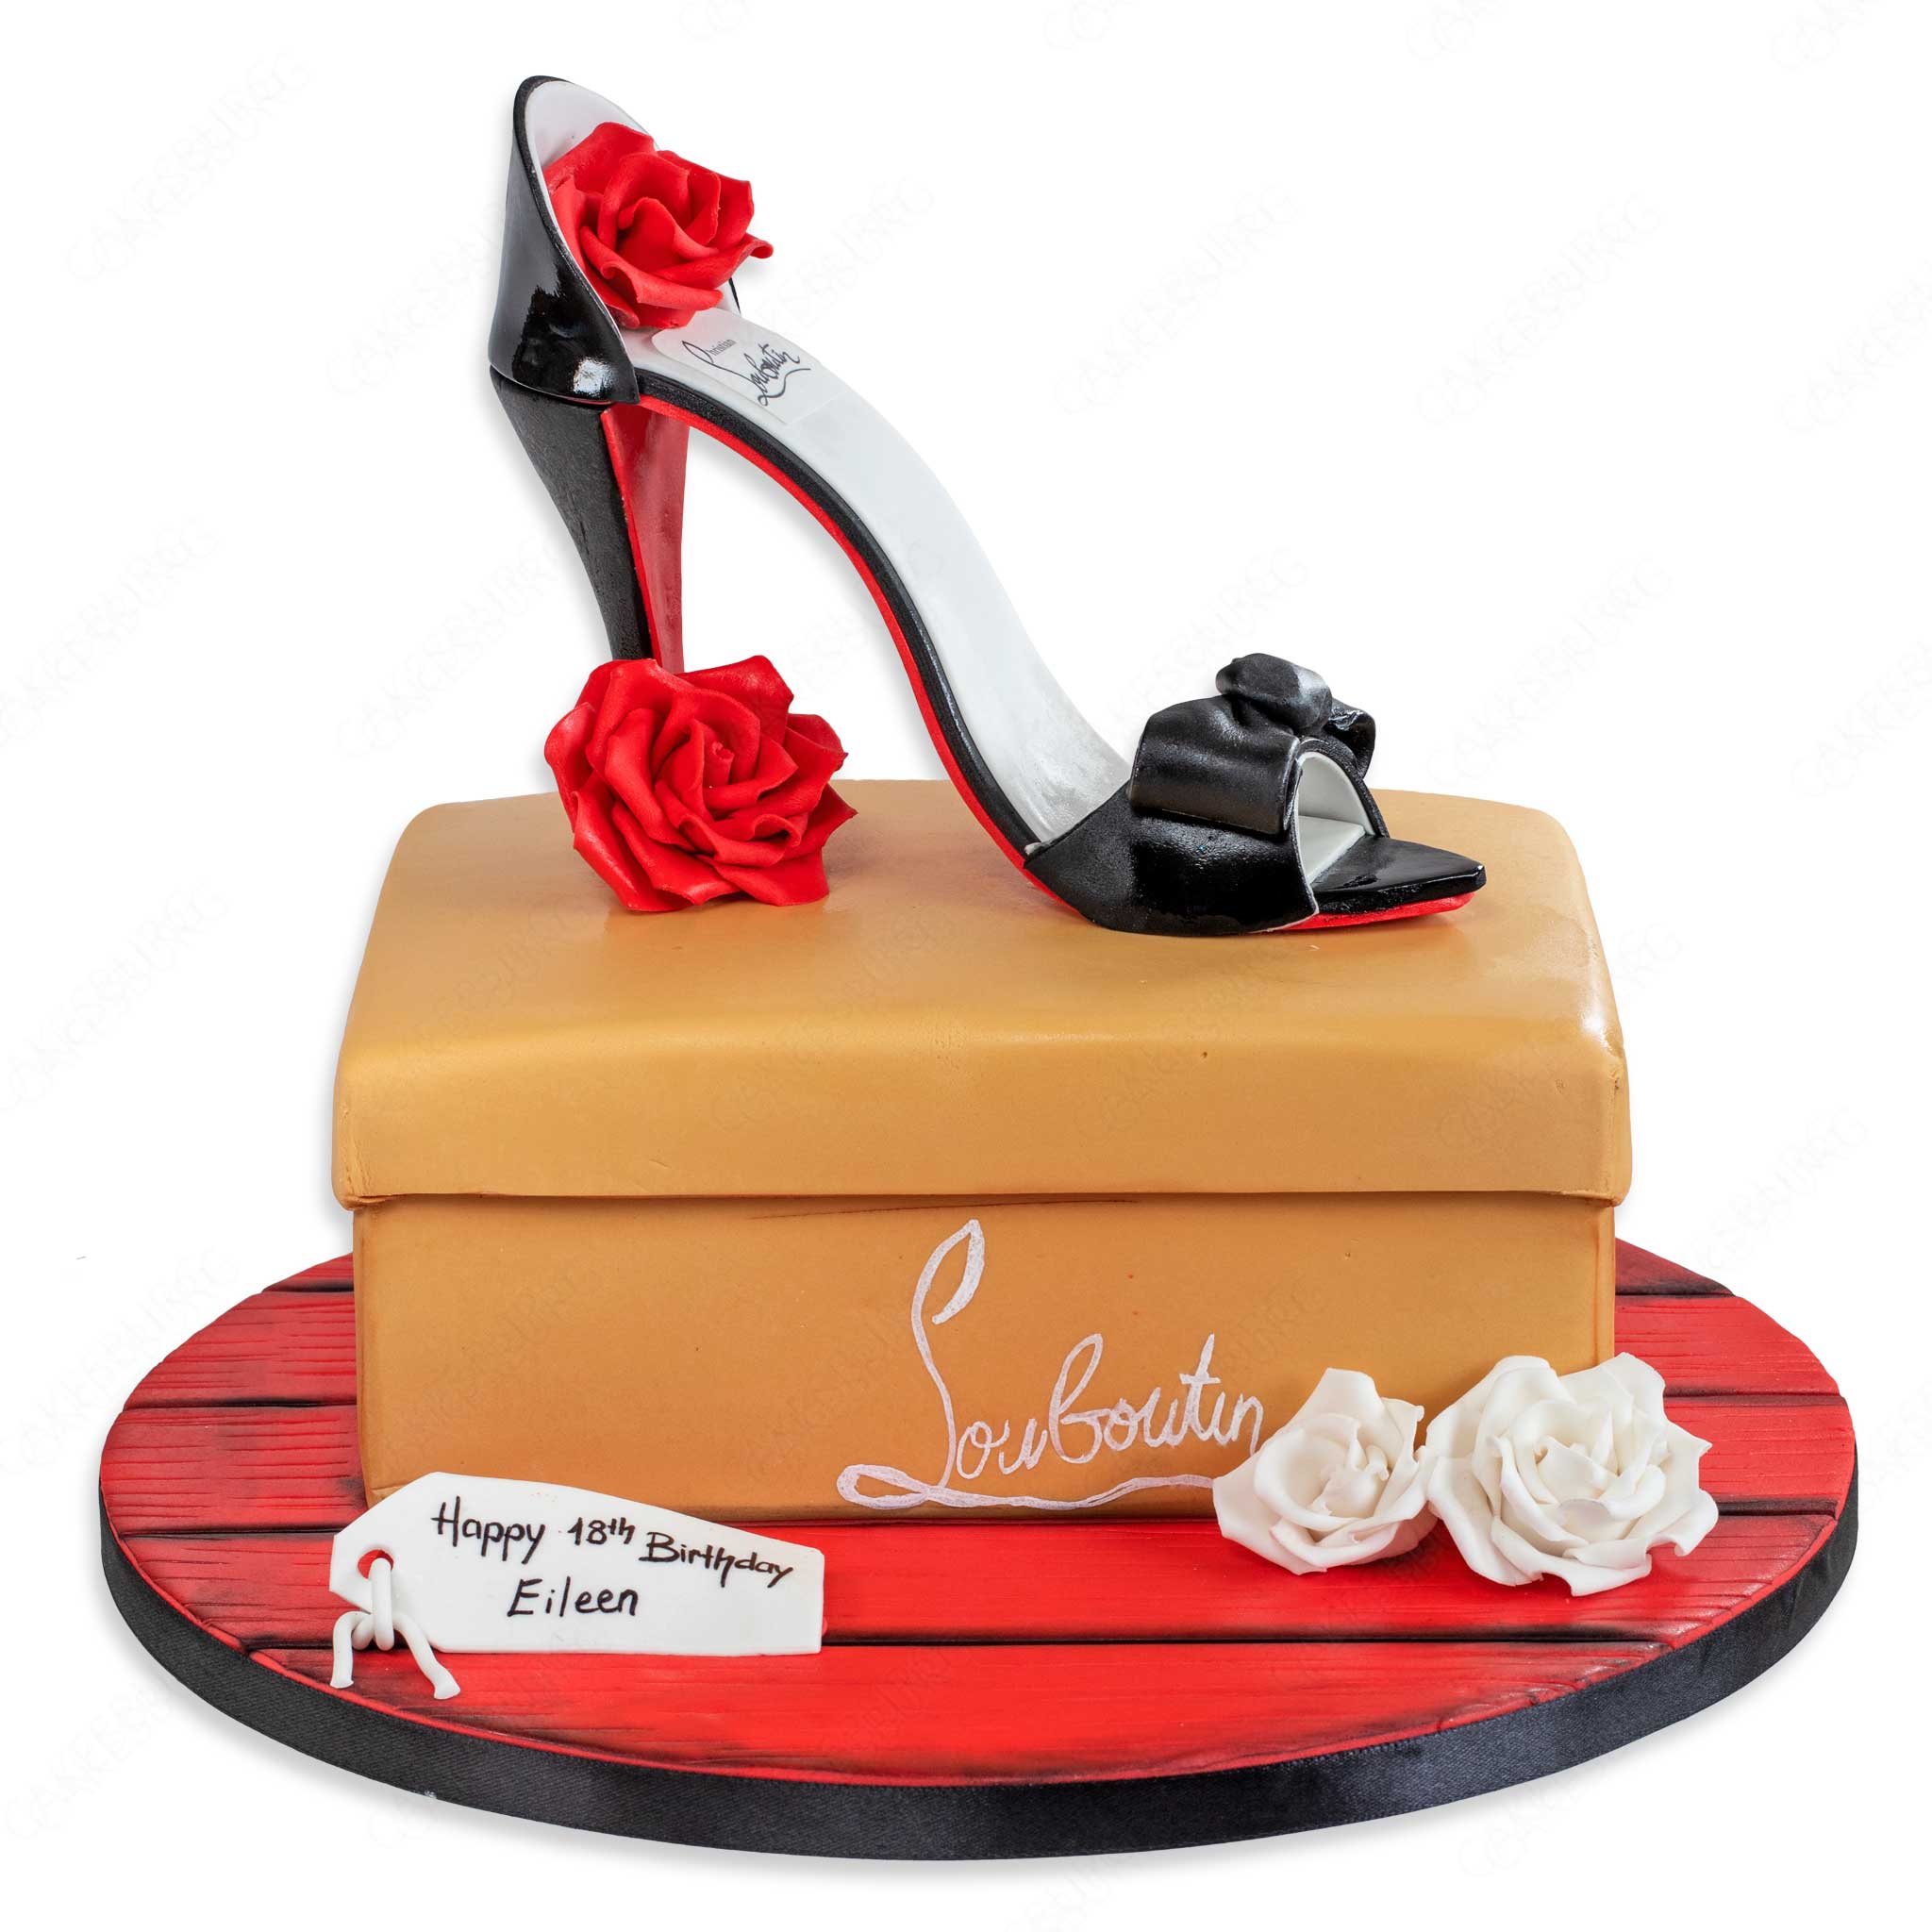 Handbag Cakes | Shoe Cakes | Makeup Cakes |Birthday Cakes | The Cake Store